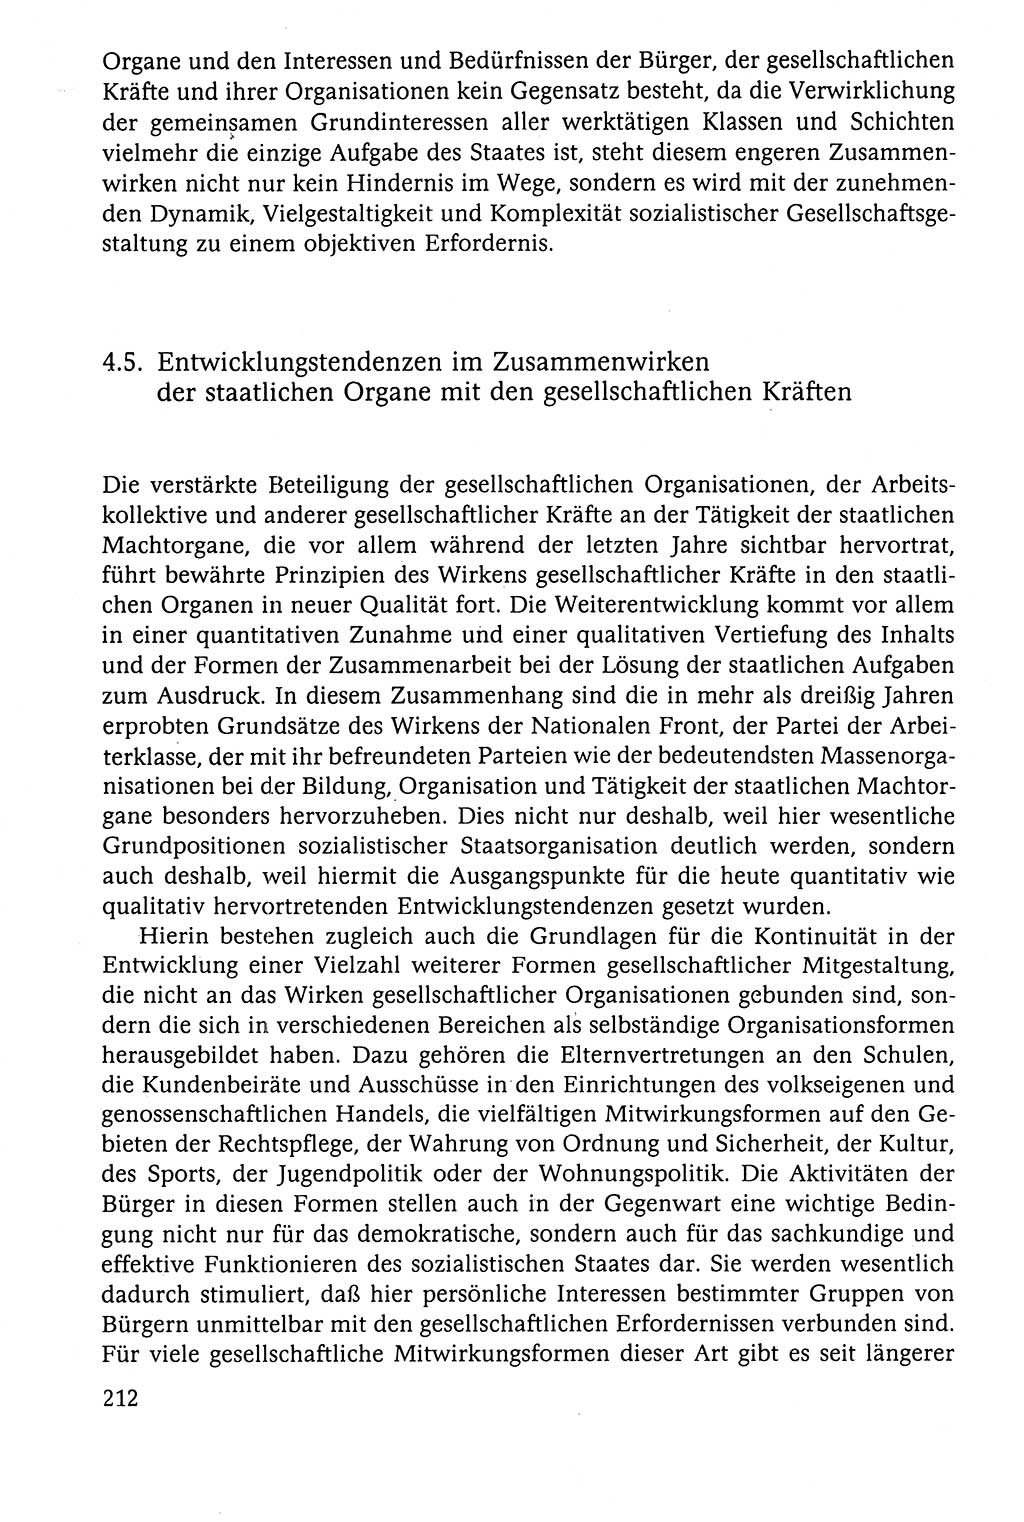 Der Staat im politischen System der DDR (Deutsche Demokratische Republik) 1986, Seite 212 (St. pol. Sys. DDR 1986, S. 212)